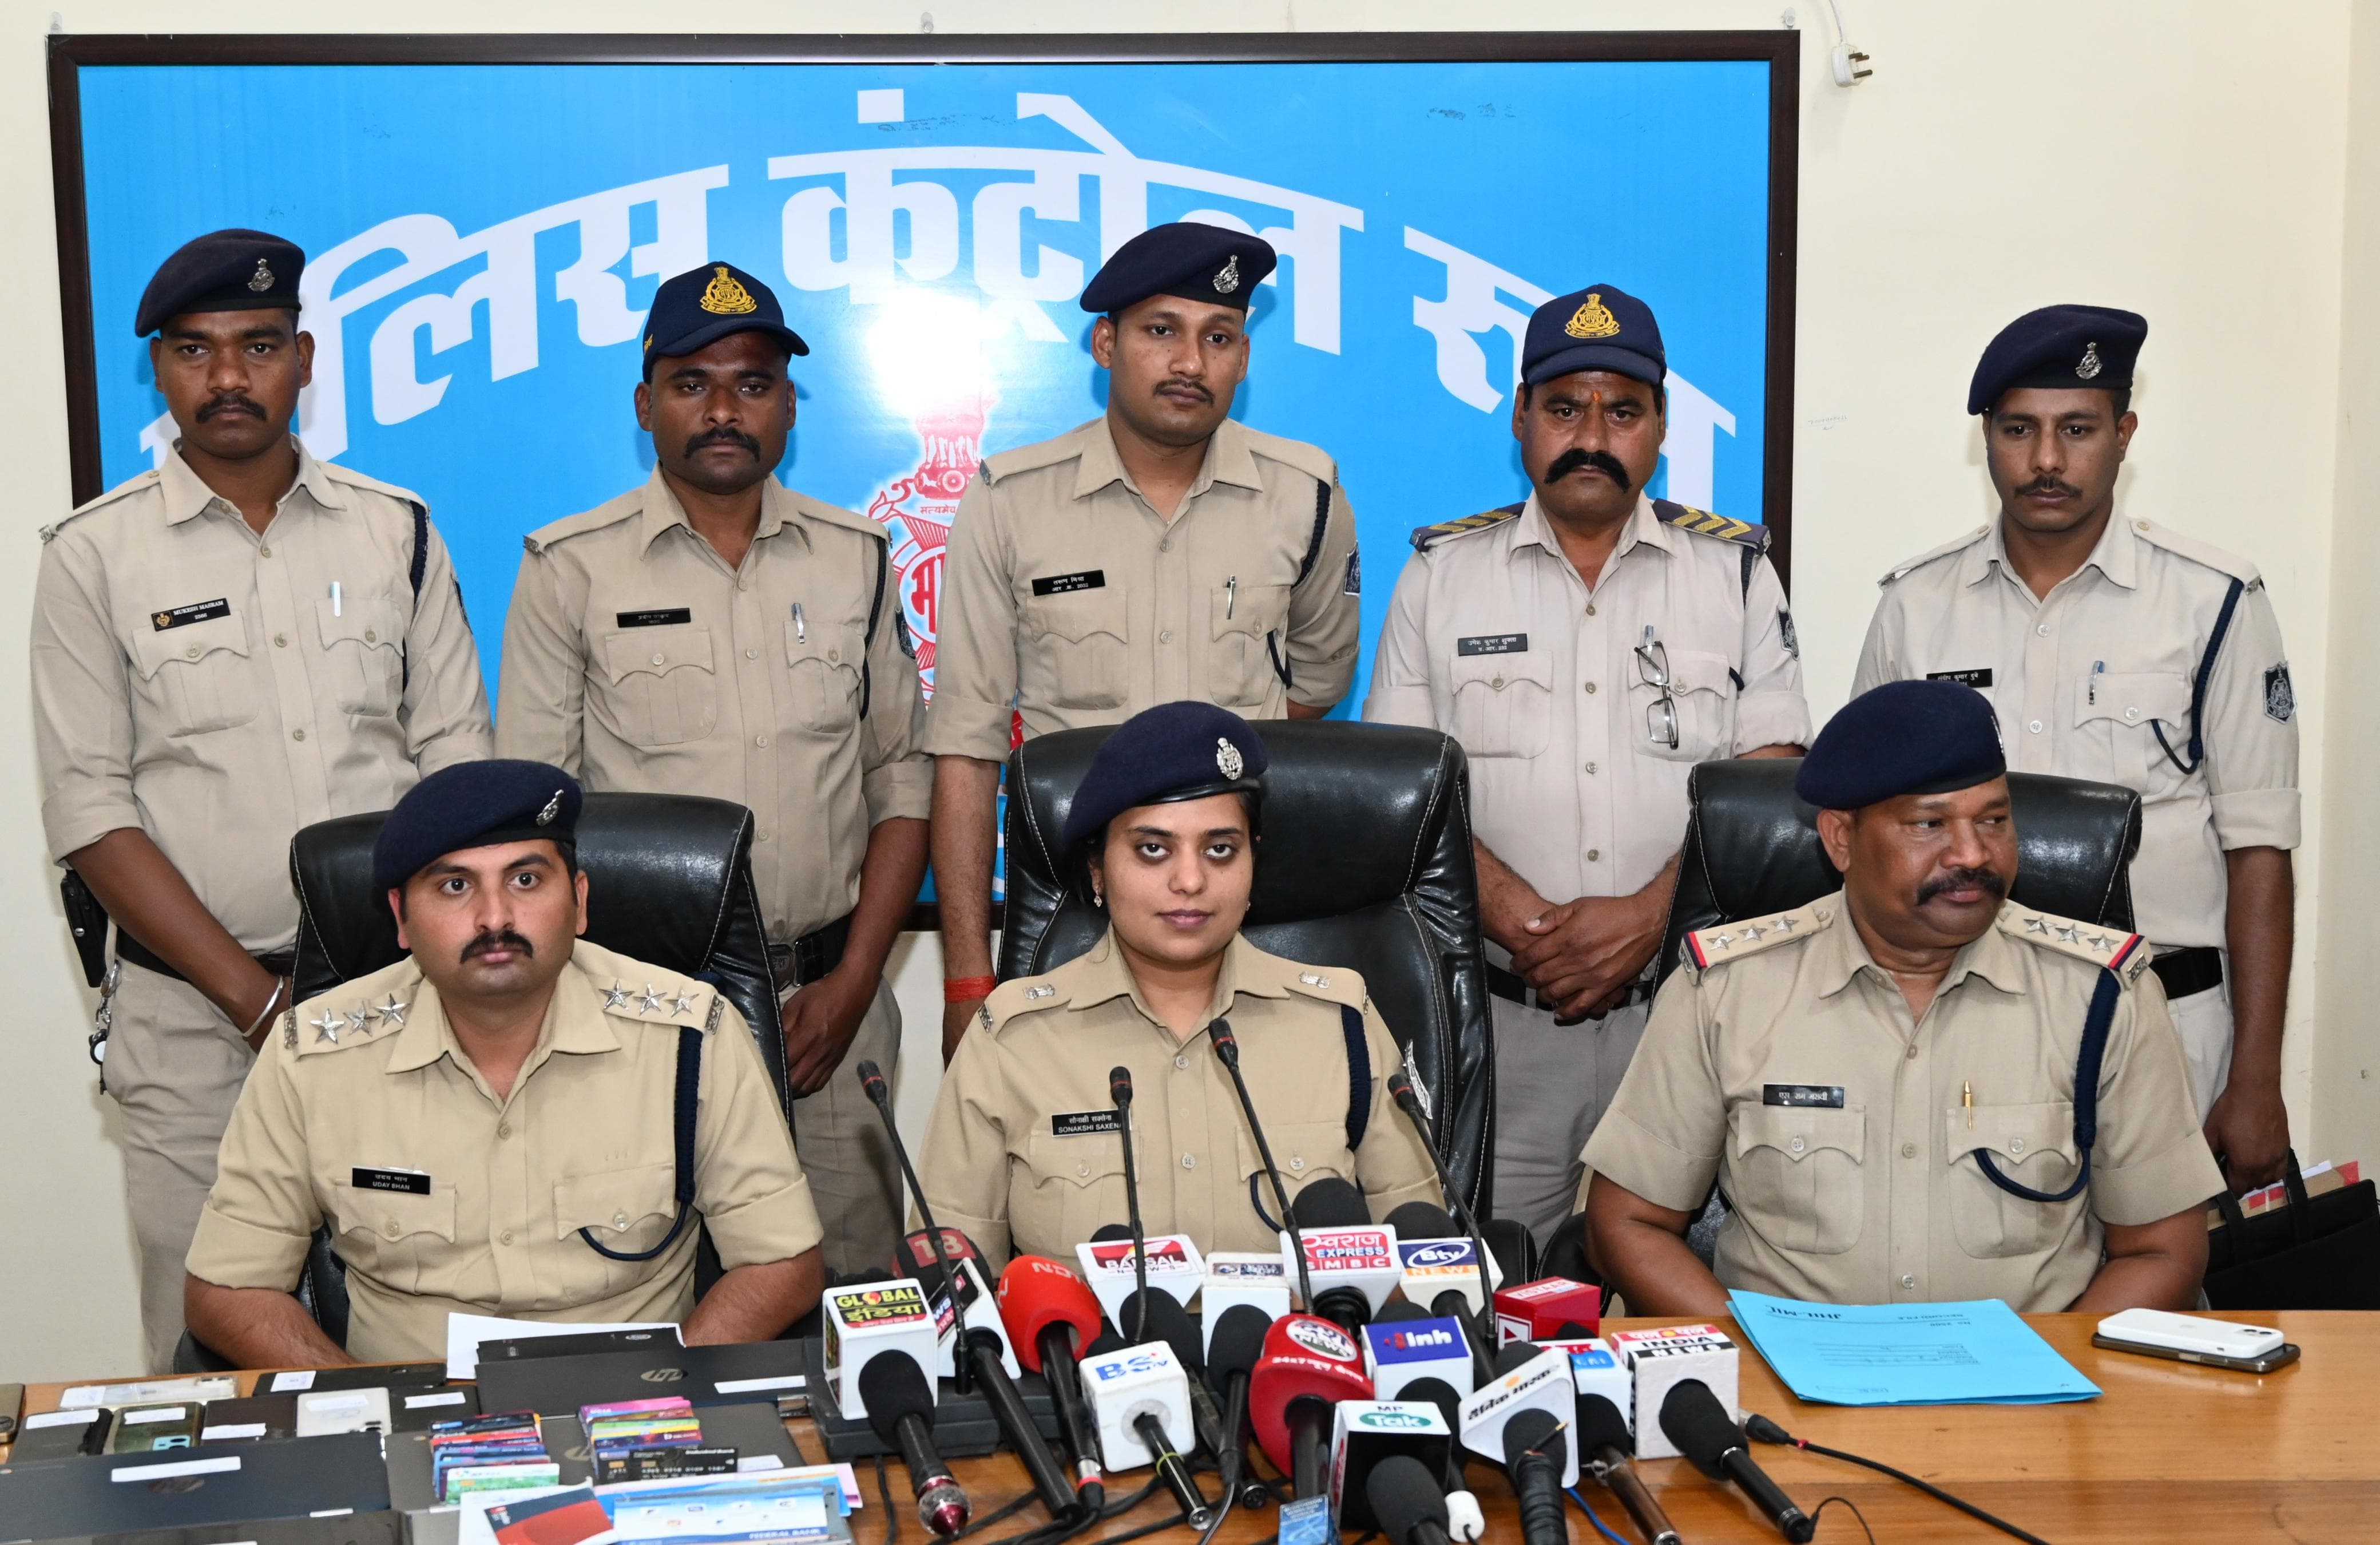 जबलपुर में महादेव एप सट्टा कारोबार का खुलासा, पुलिस ने छग, बिहार, झारखंड़ के 11 आरोपी किए गिरफ्तार
